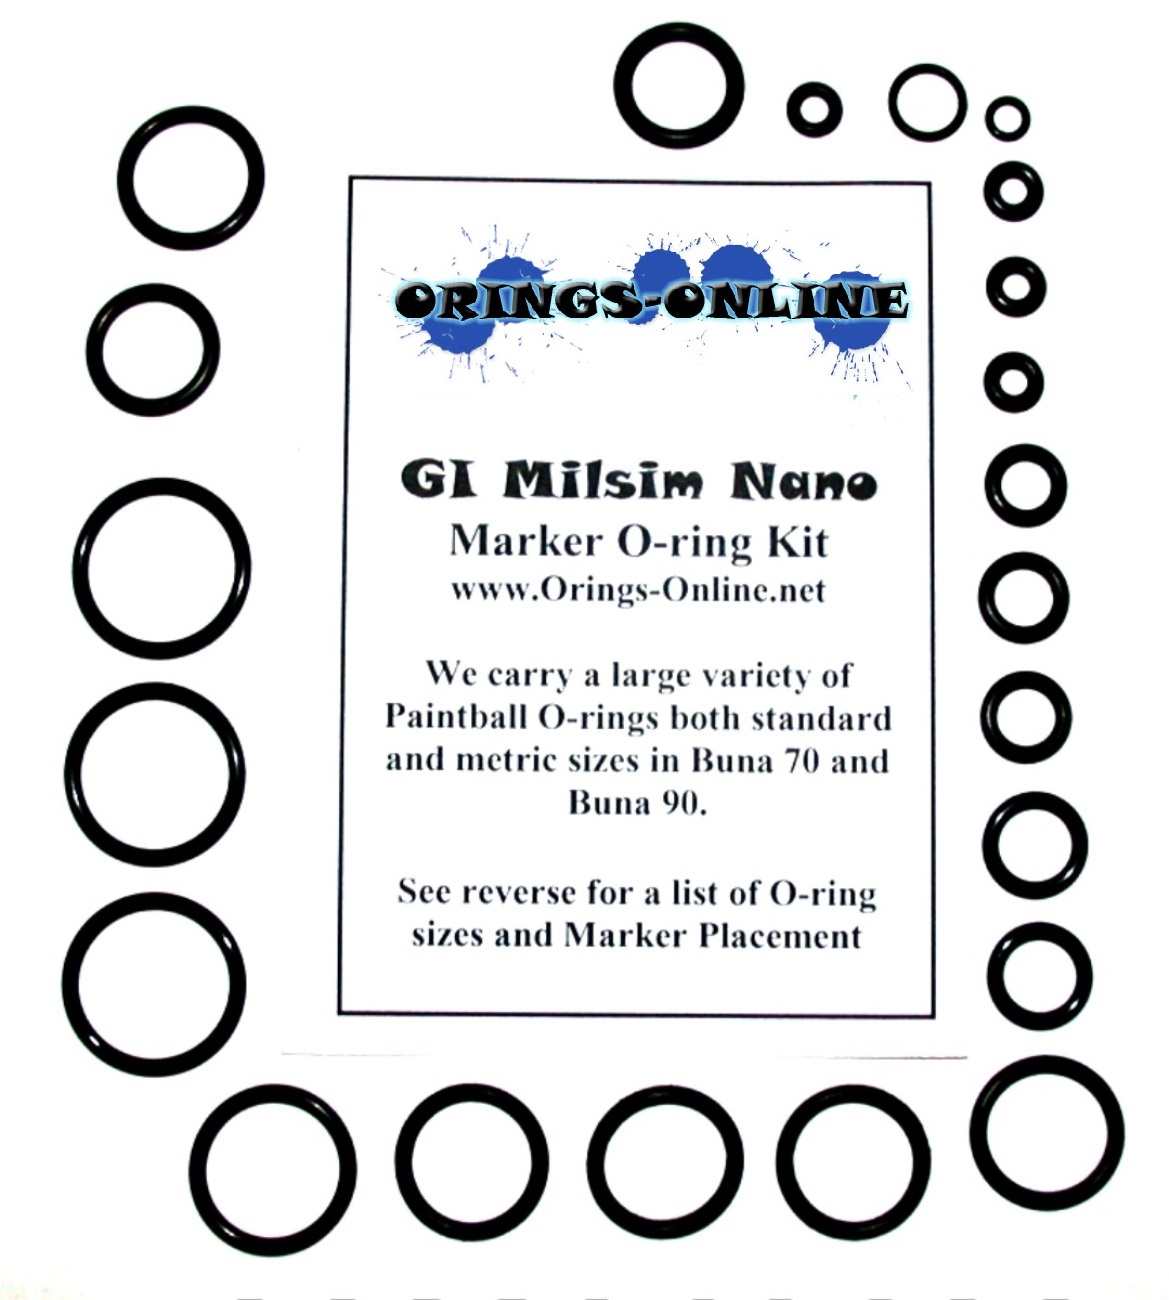 GI Milsim Nano Marker O-ring Kit